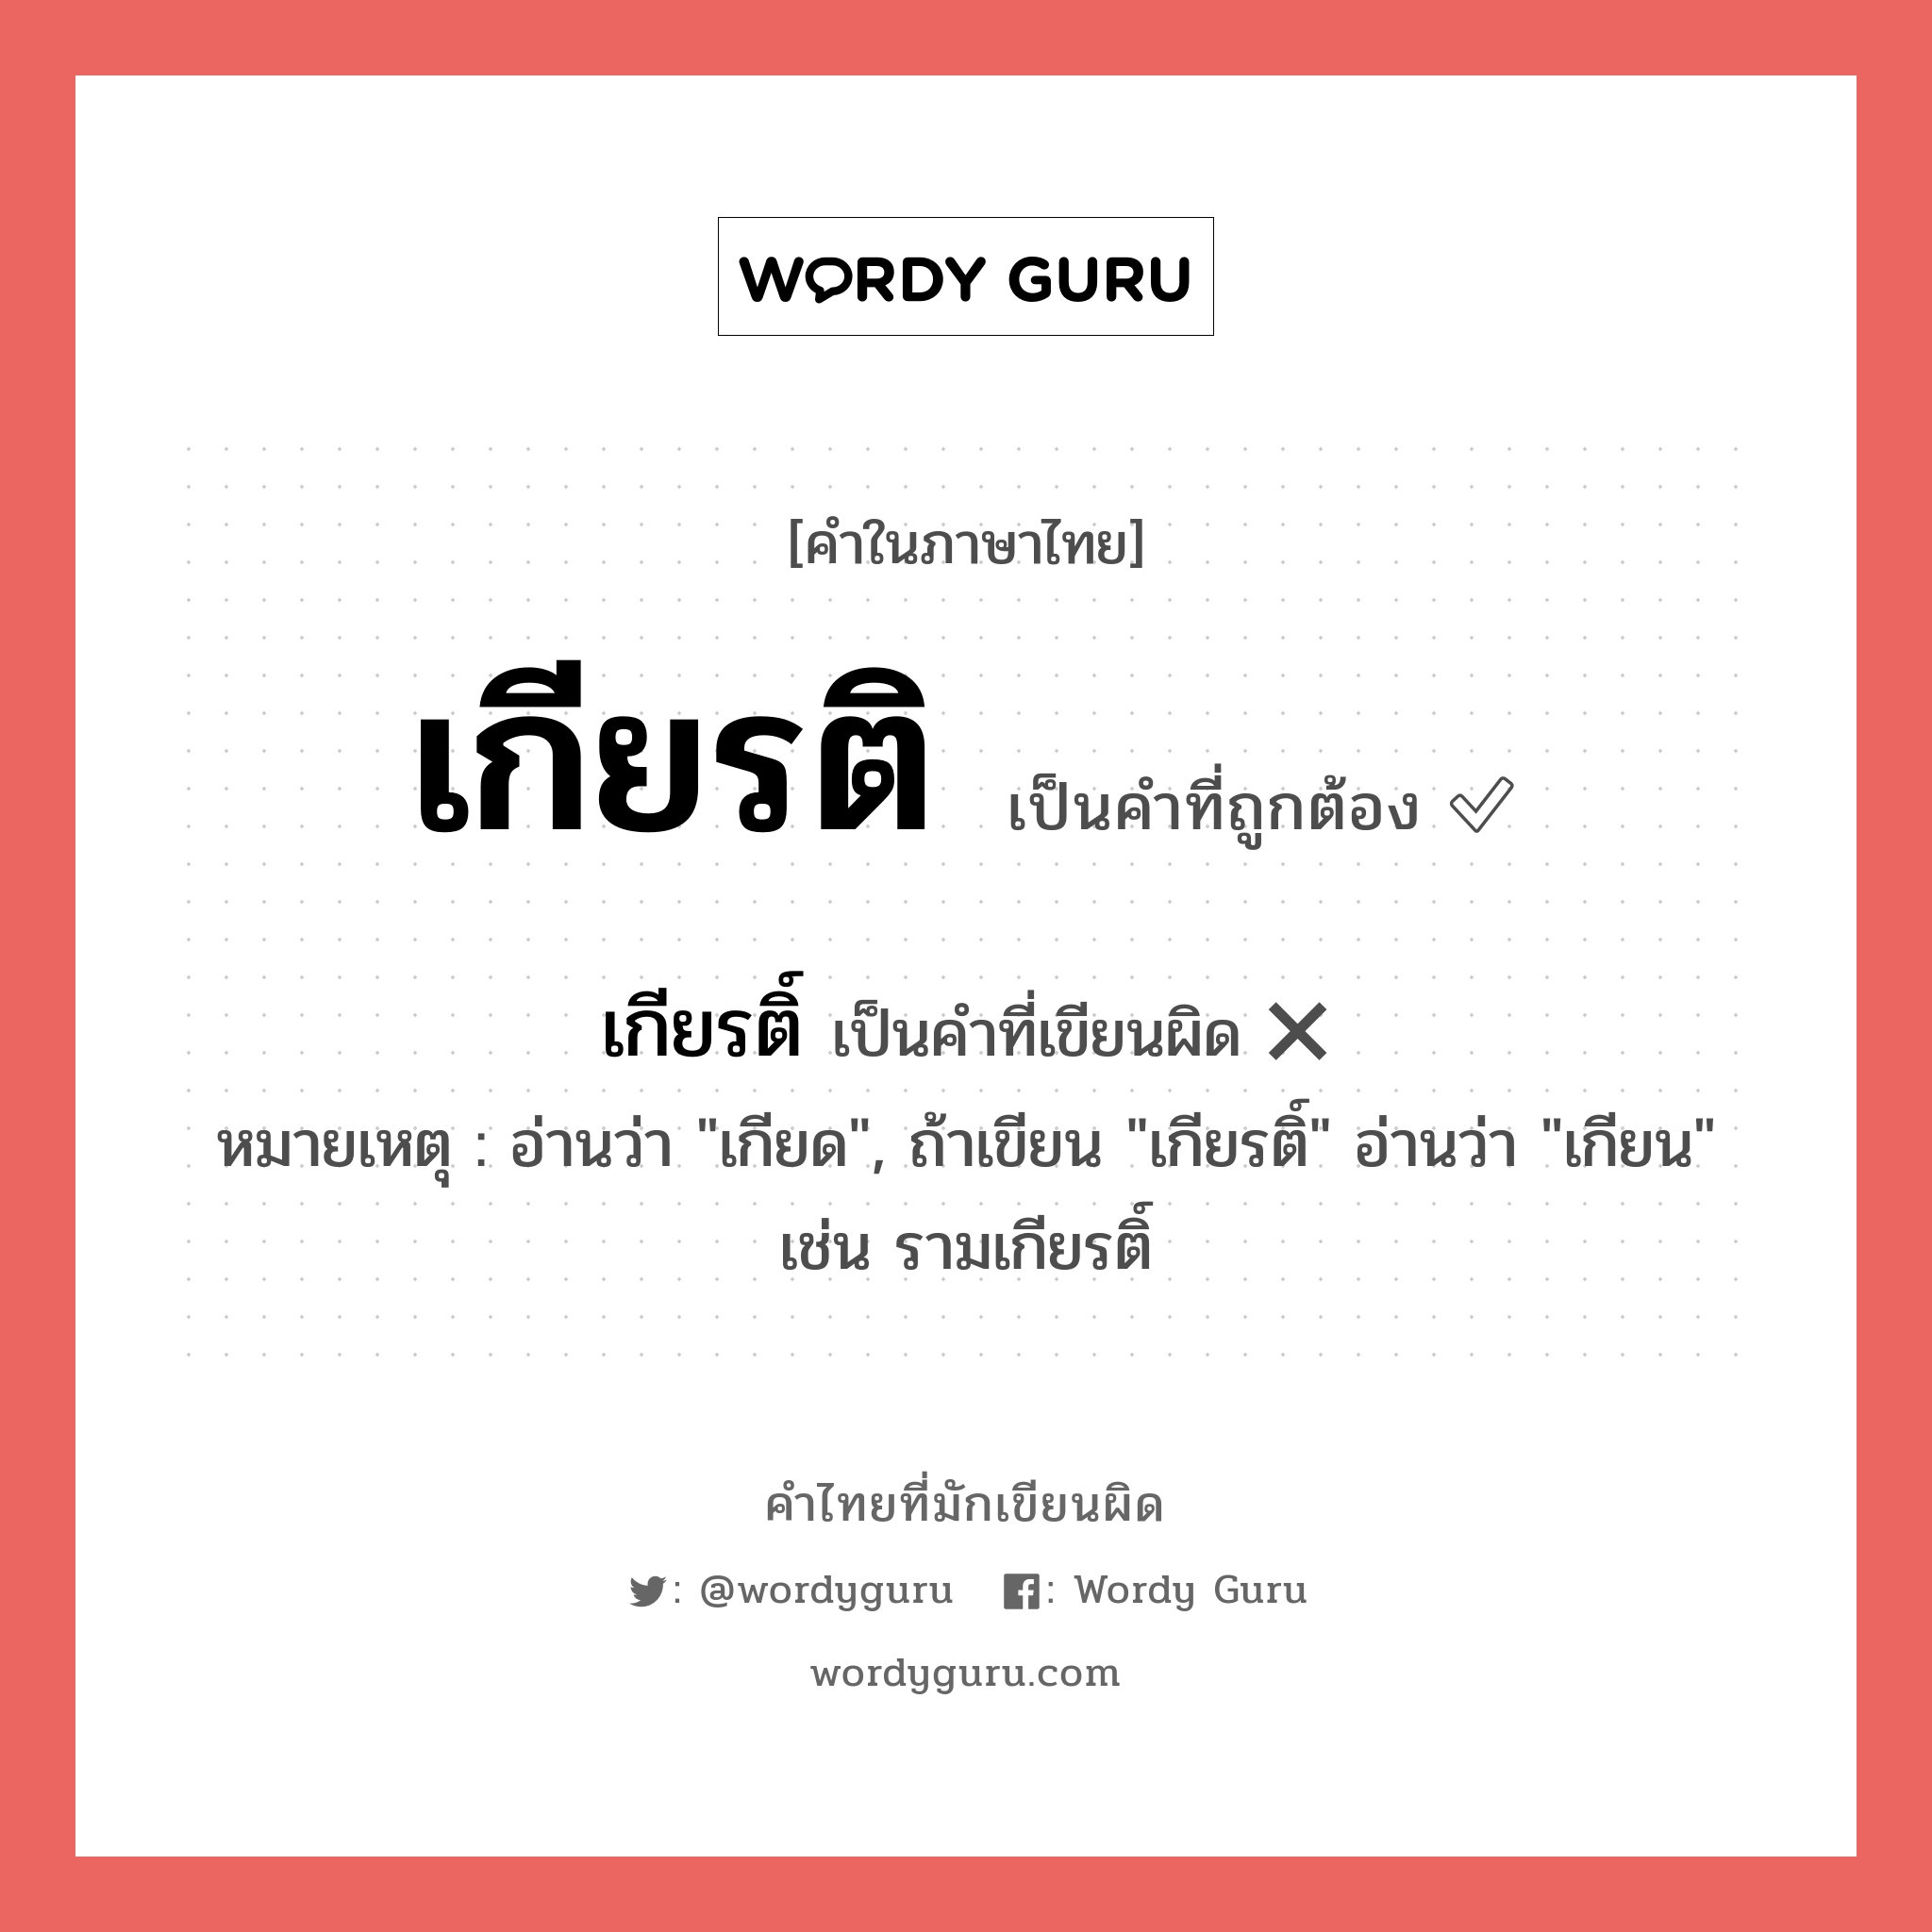 เกียรติ หรือ เกียรติ์ เขียนยังไง? คำไหนเขียนถูก?, คำในภาษาไทยที่มักเขียนผิด เกียรติ คำที่ผิด ❌ เกียรติ์ หมายเหตุ อ่านว่า "เกียด", ถ้าเขียน "เกียรติ์" อ่านว่า "เกียน" เช่น รามเกียรติ์